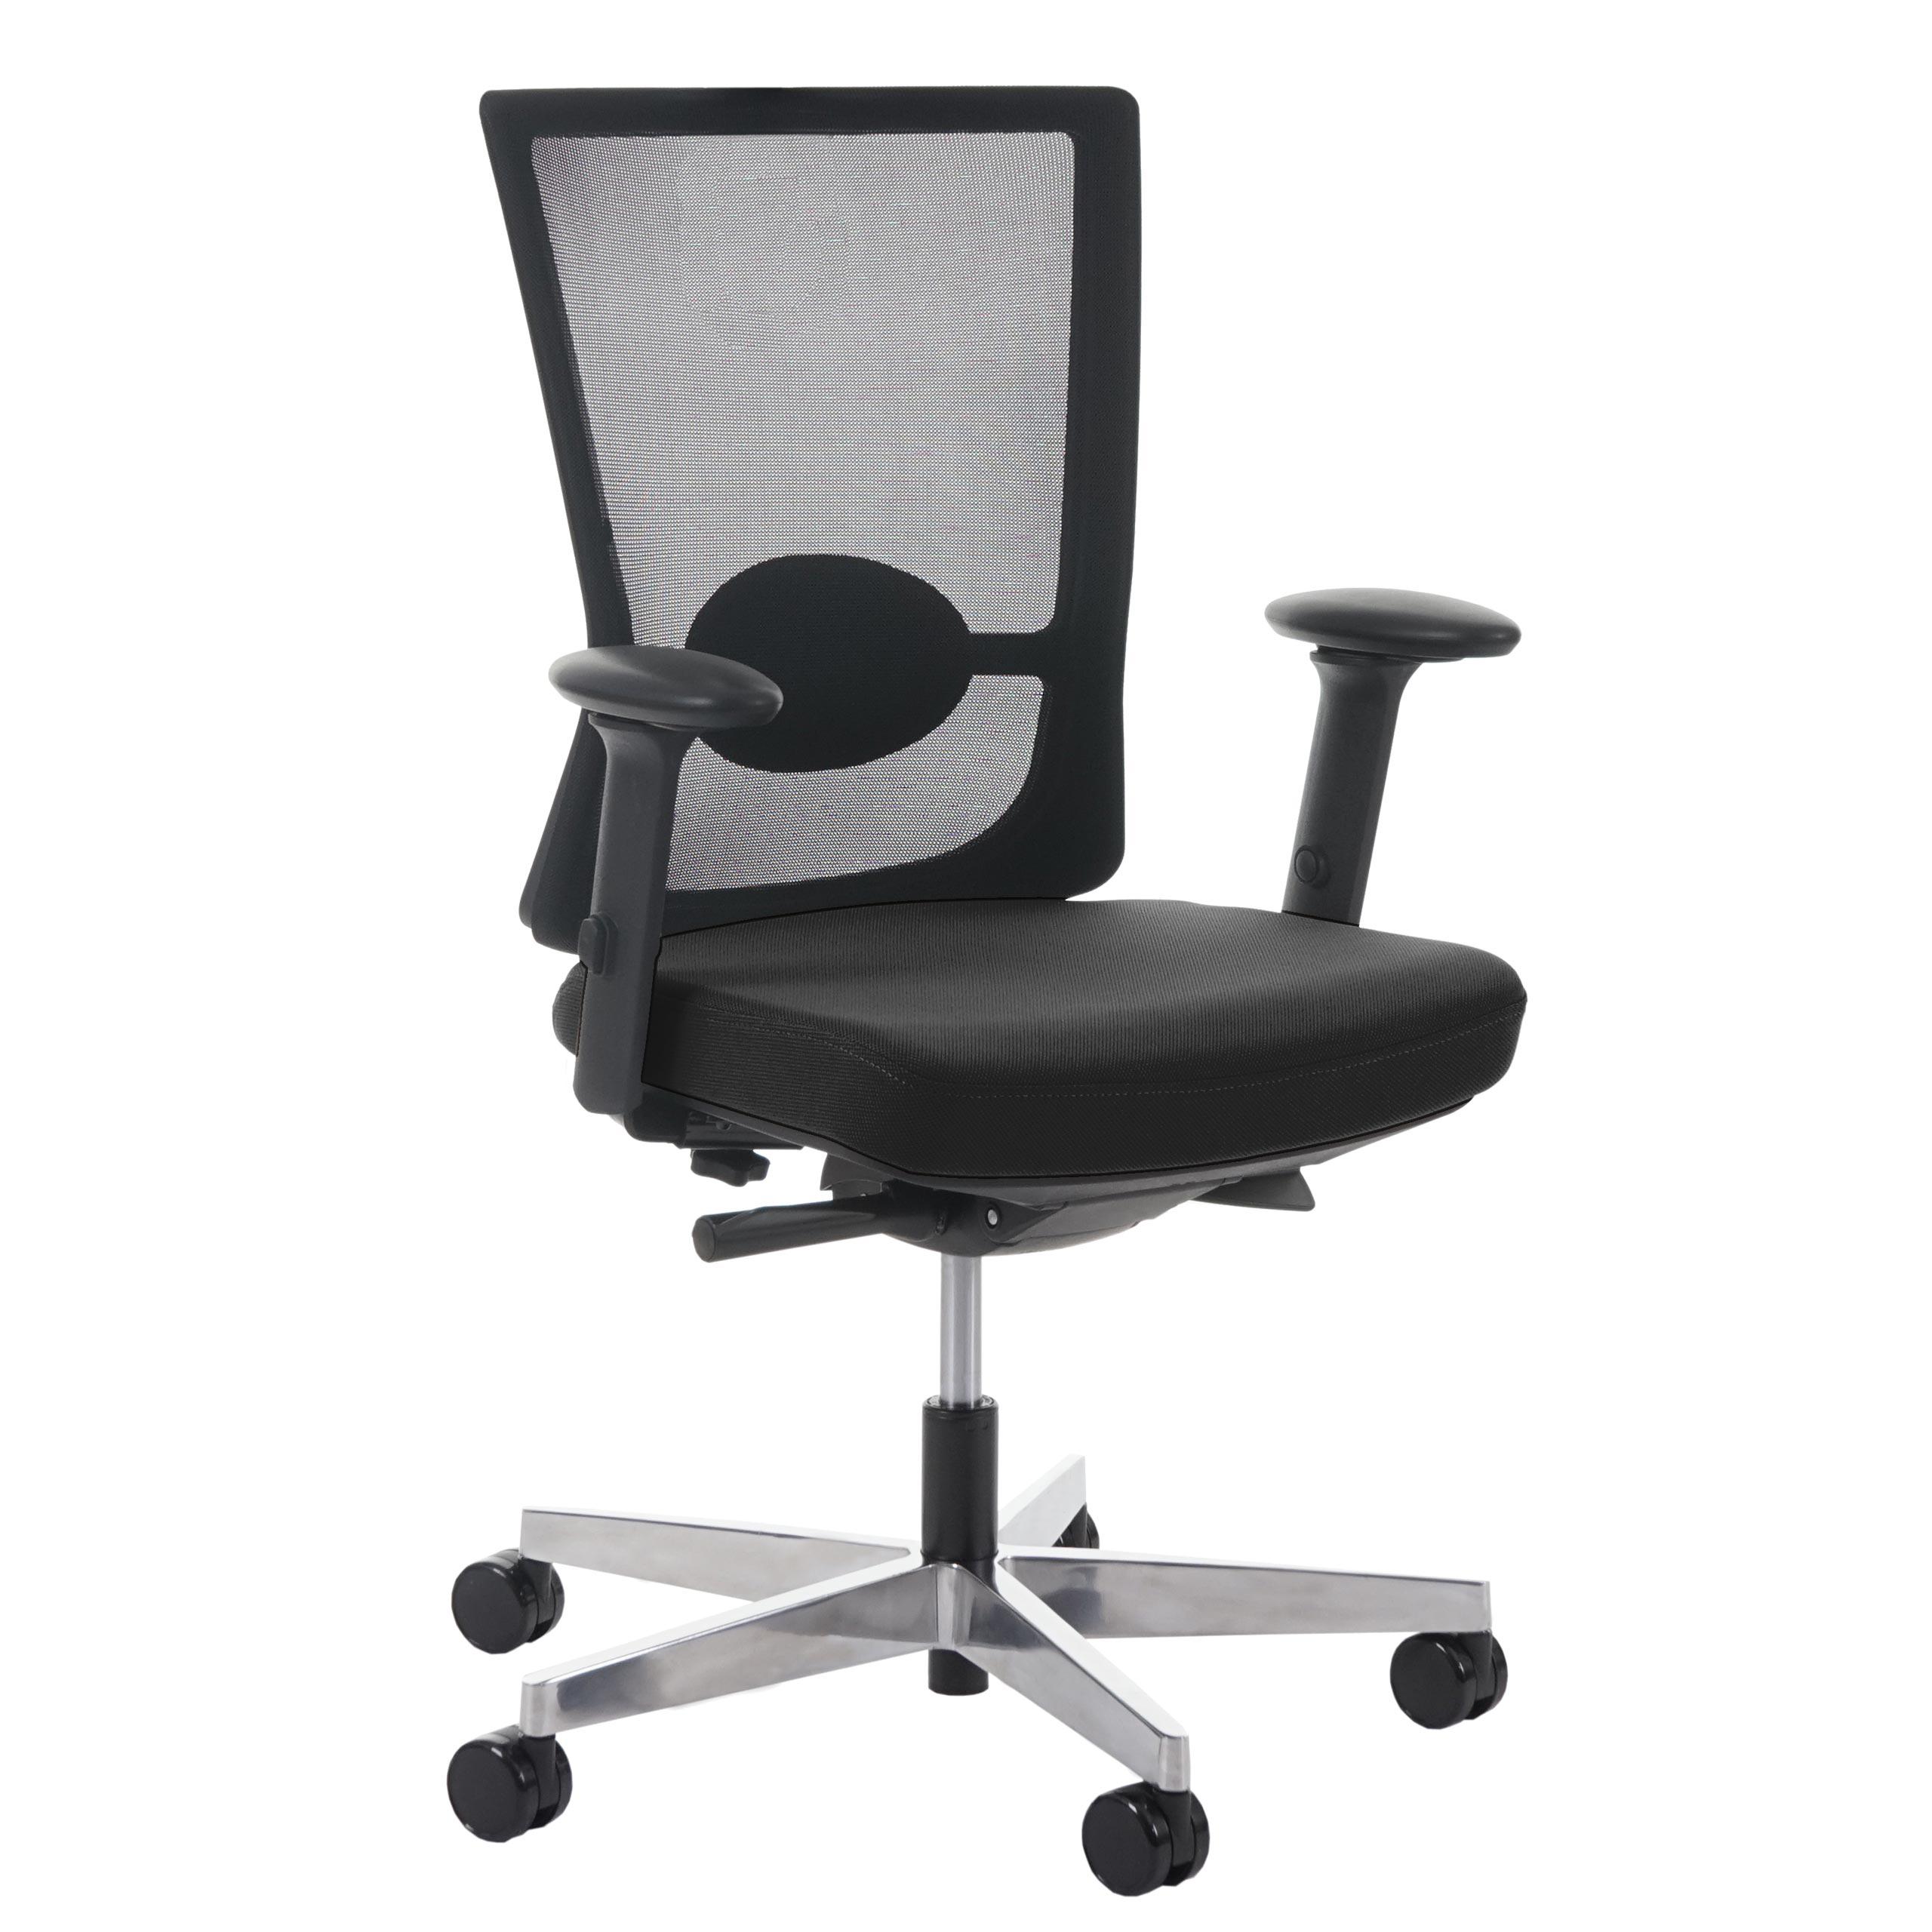 Chaise ergonomique NIL, 100% Ajustable, Excellente Qualité, Utilisation 8 heures, Noir